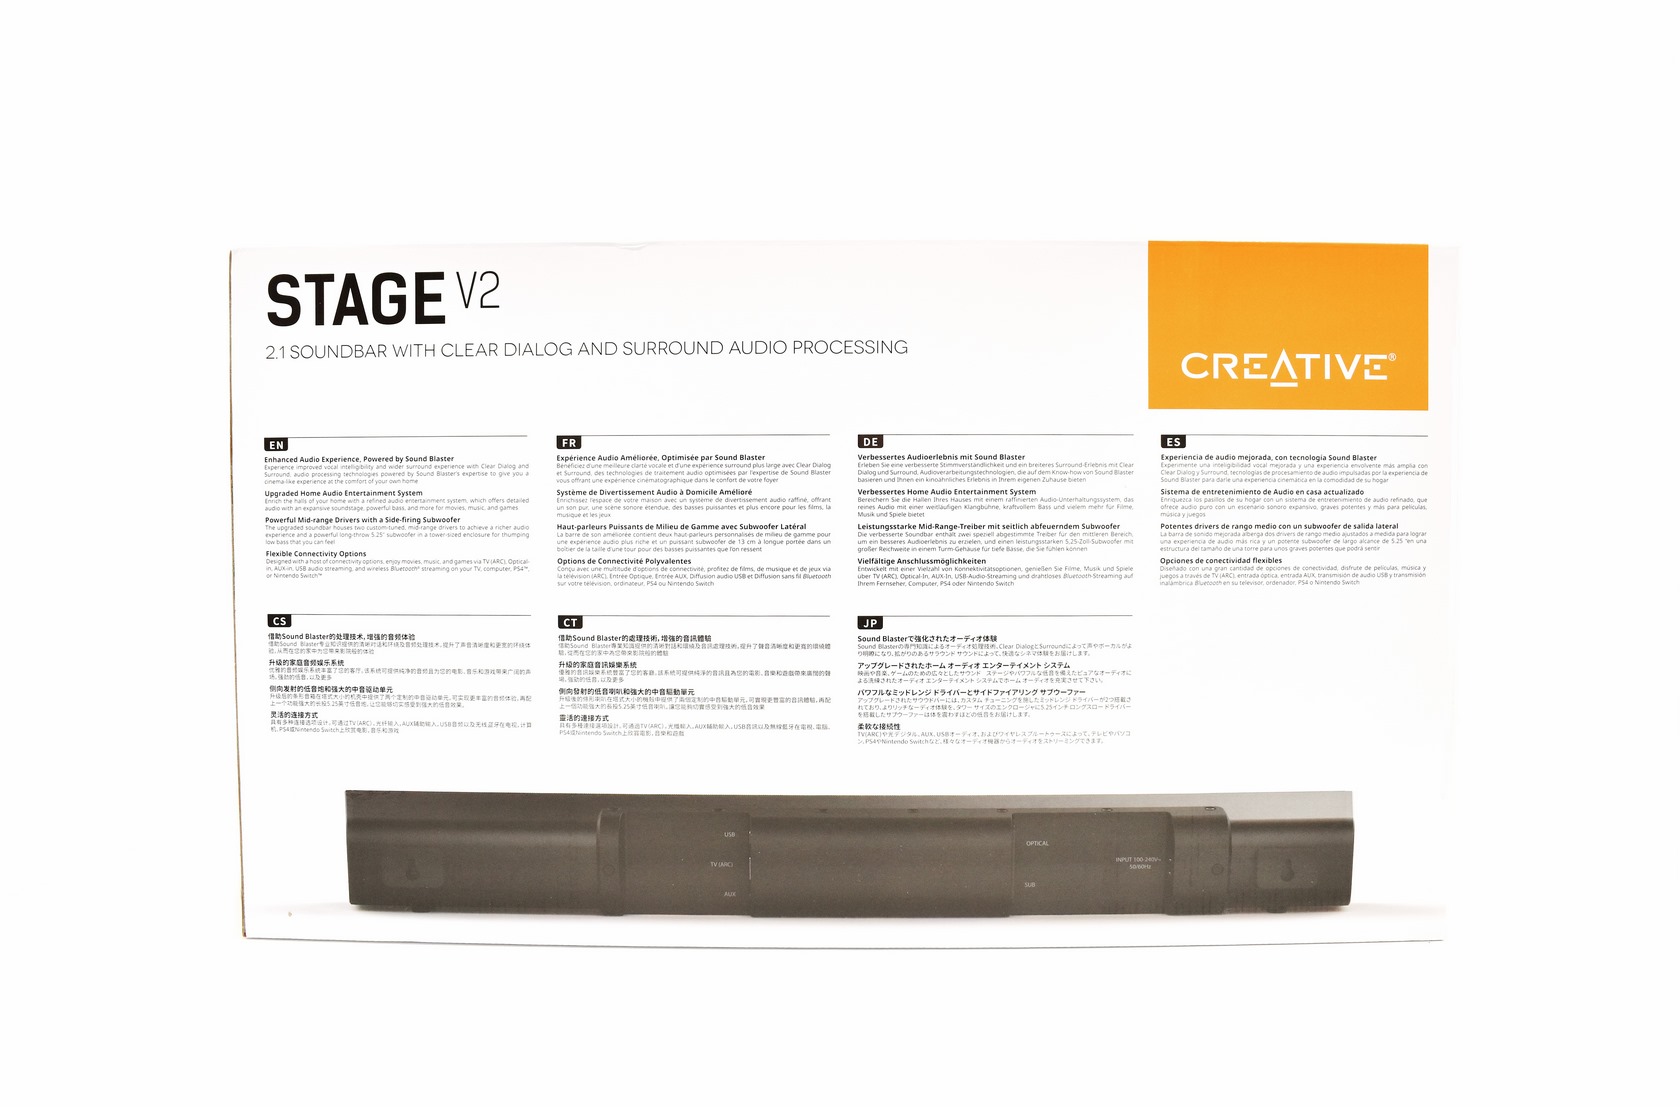 Stage Review Soundbar V2 Creative 2.1